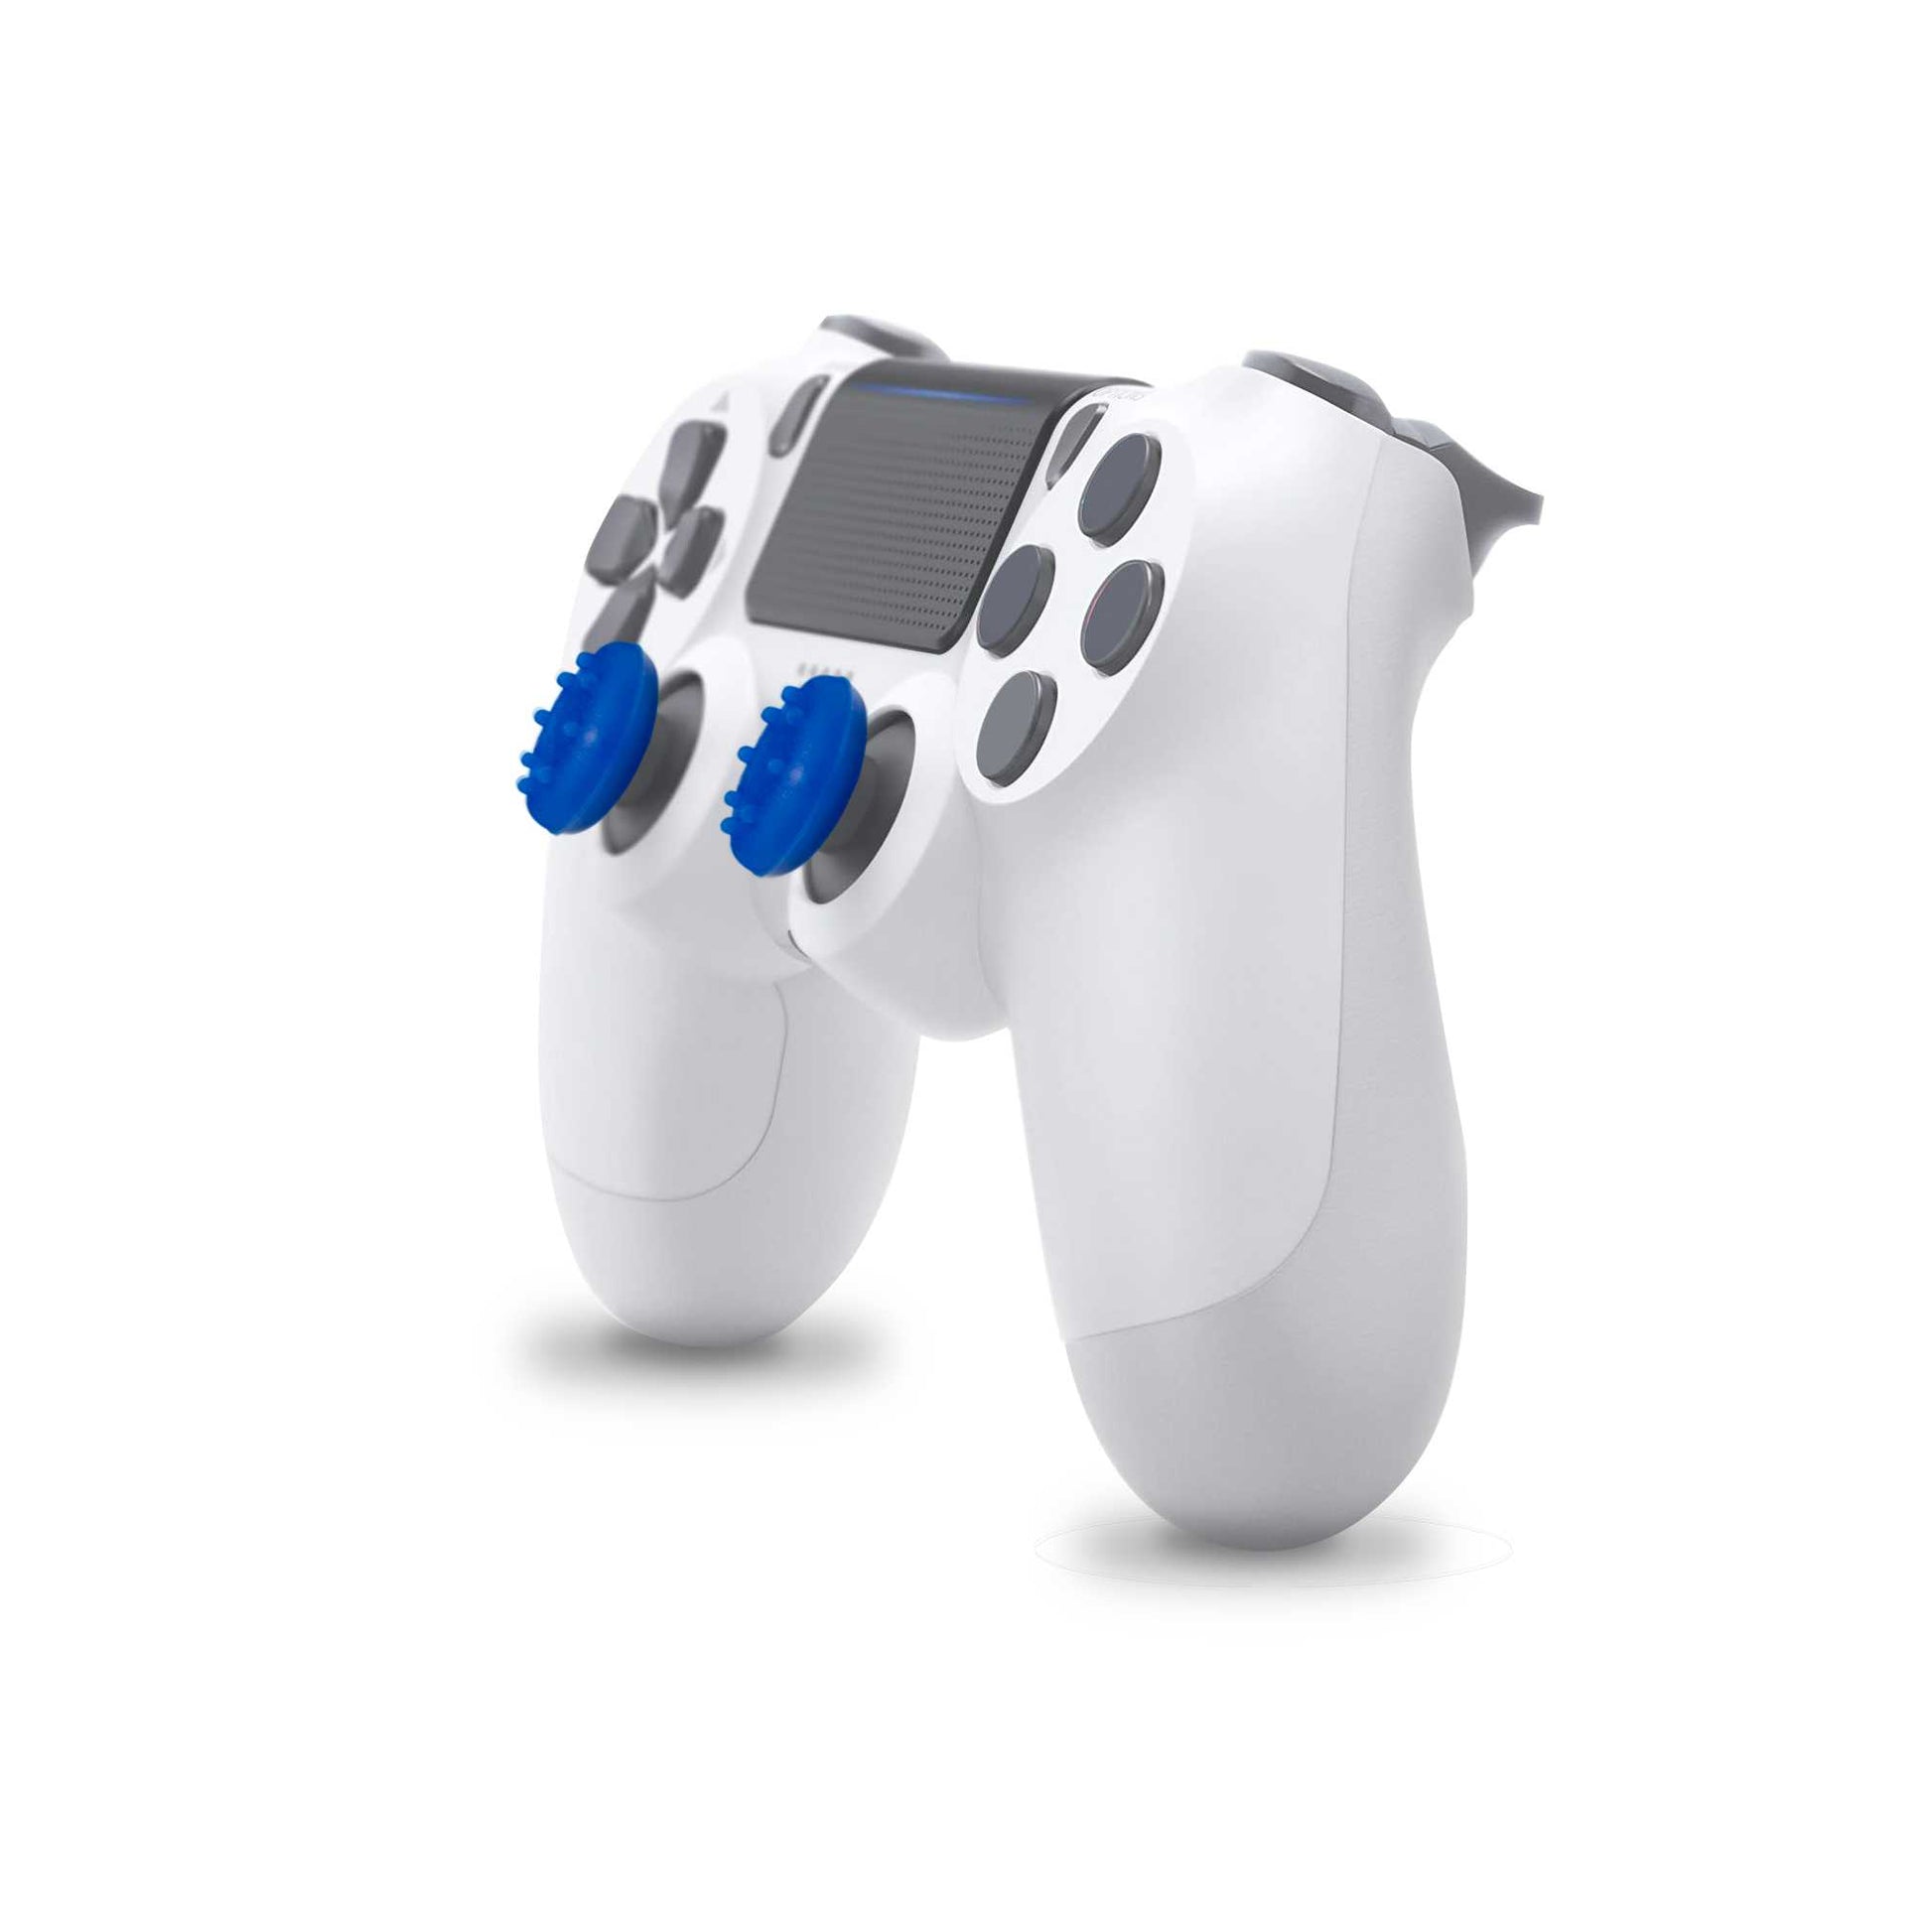 2x Cubierta de Agarre Para Joystick Mando PS5/PS4/FAT/Slim/Pro Xbox One Eje L3 R3 Gomas Azul, Accesorios Protección Joystick